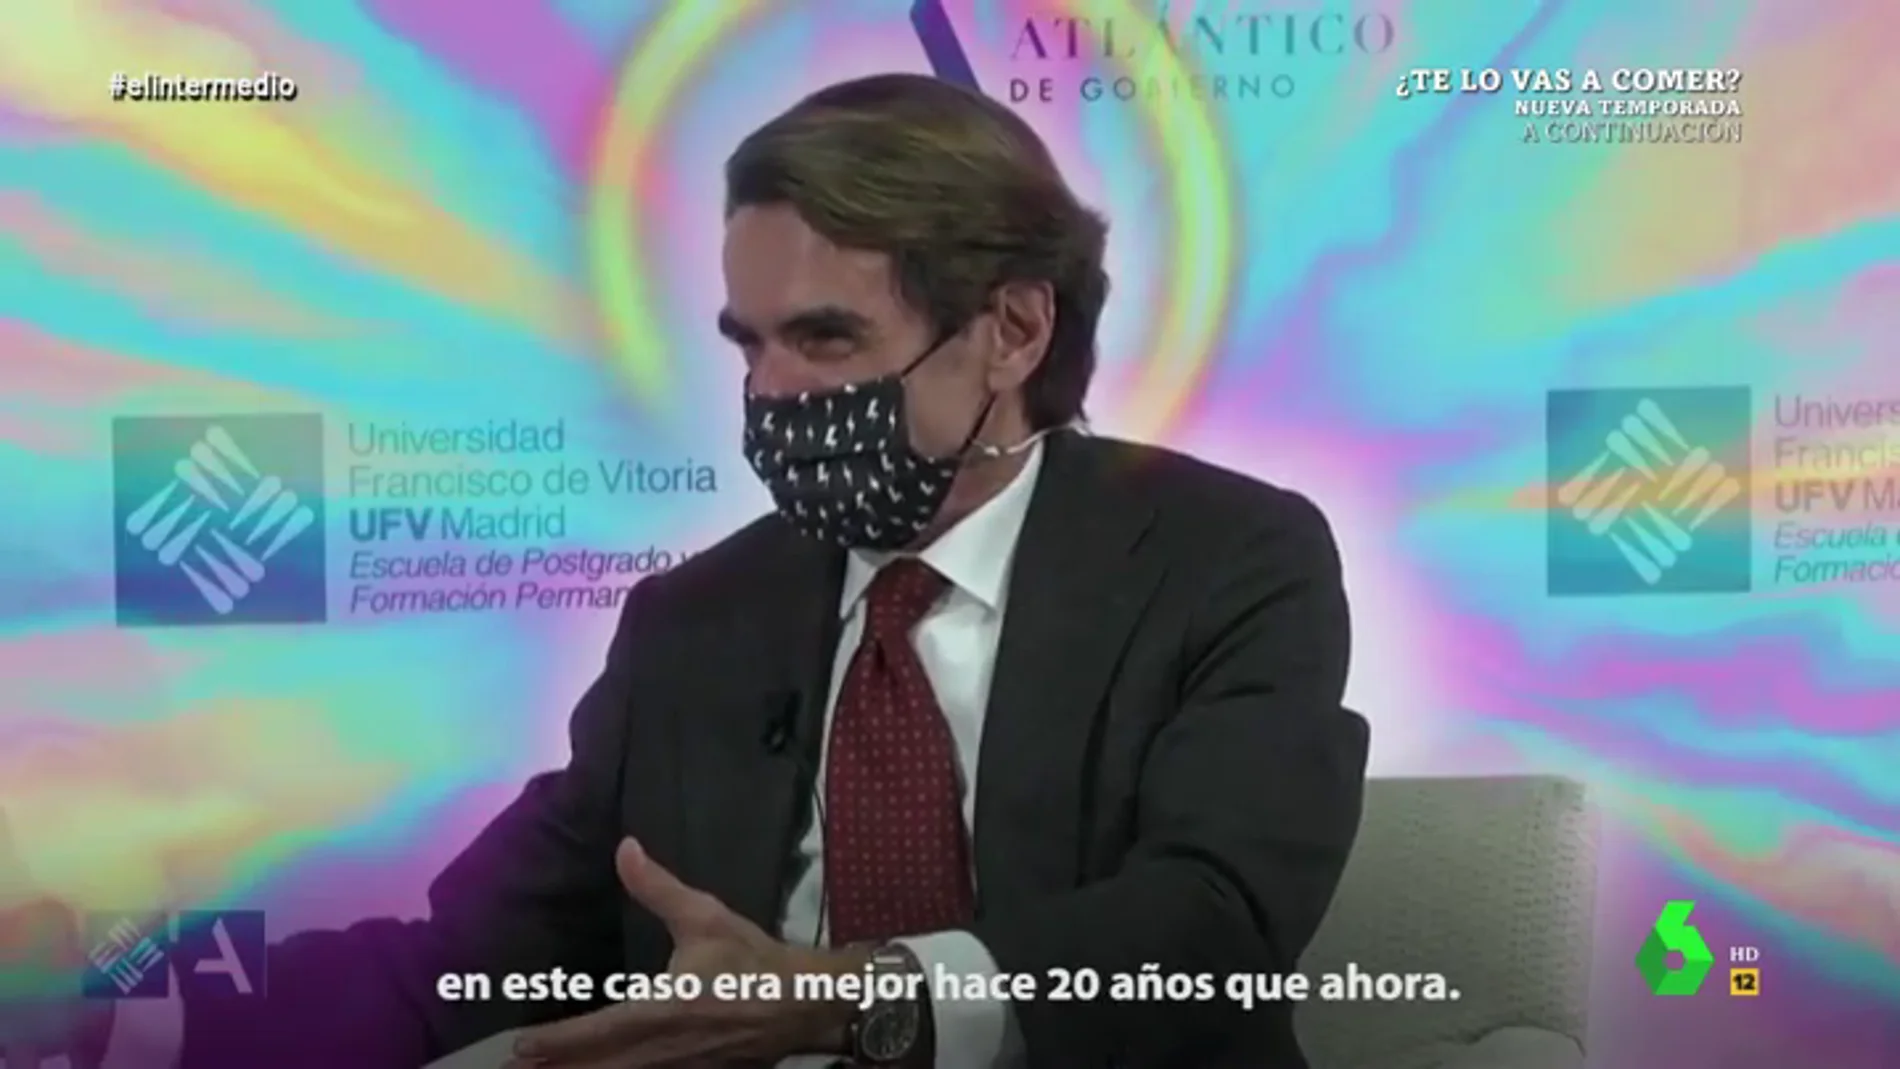 La reacción de Wyoming y el Dani Mateo a las risas de Aznar tras afirmar que "España era mejor hace 20 años que ahora"